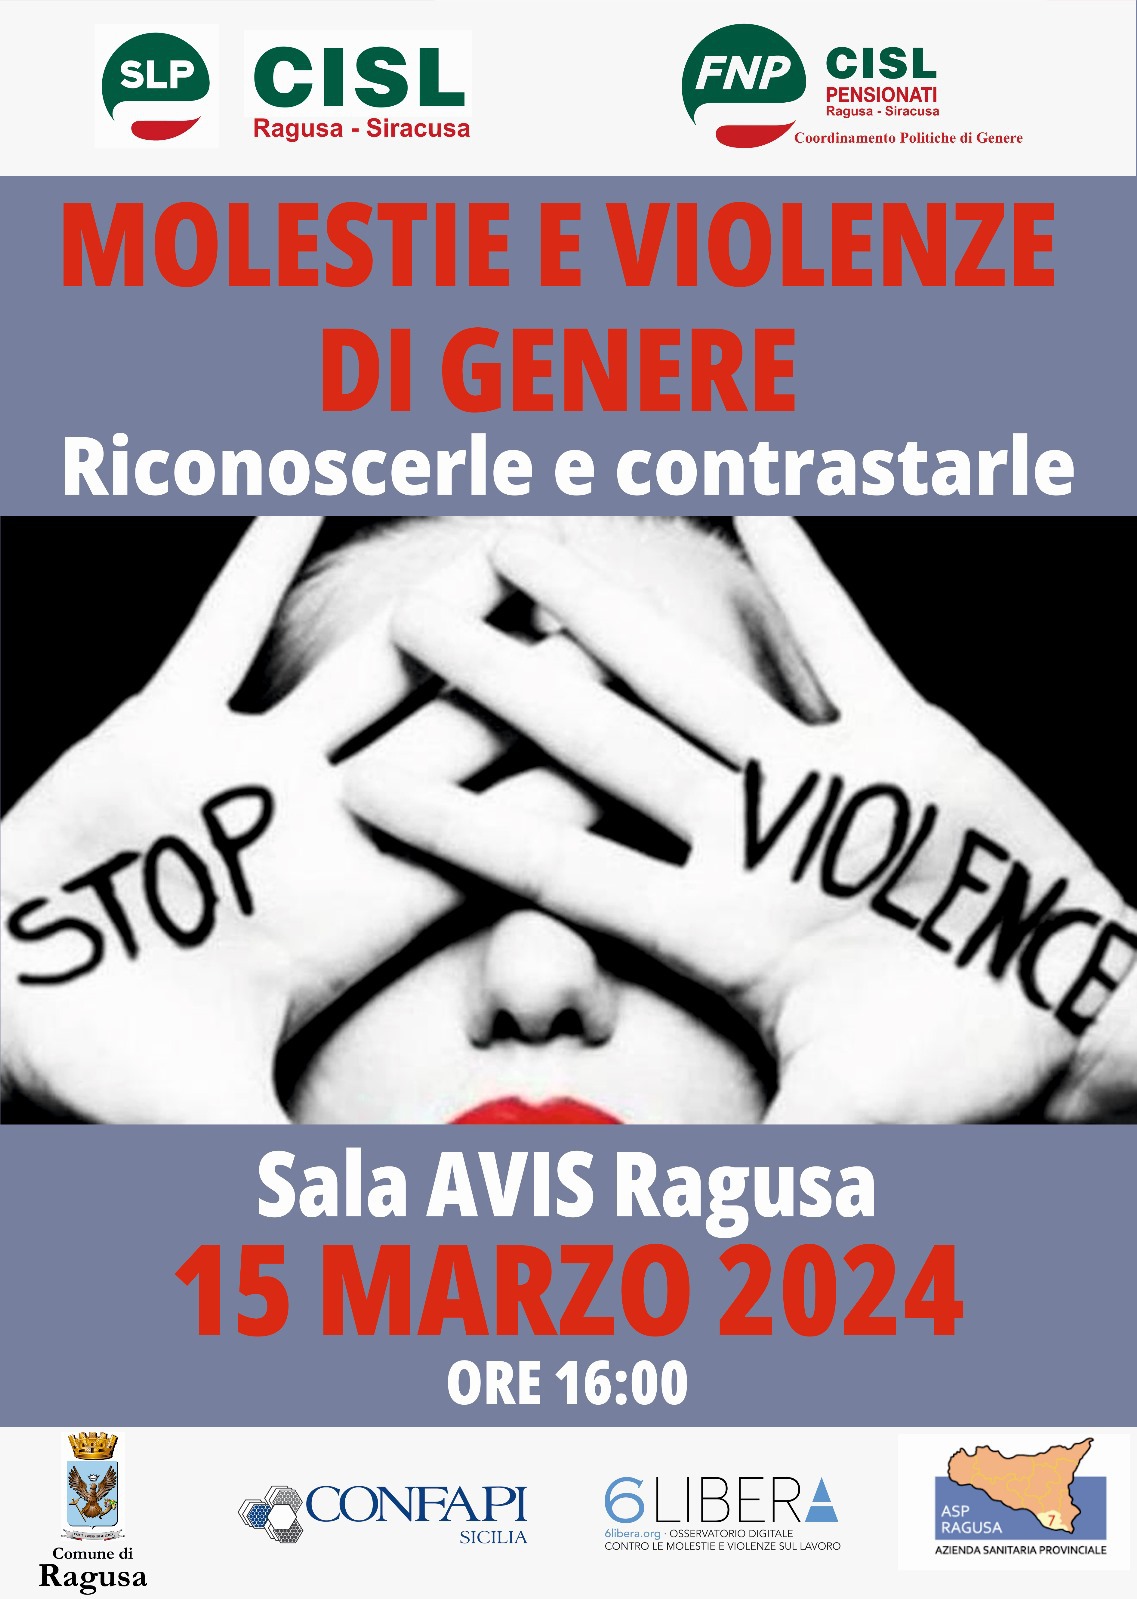 Al momento stai visualizzando “Molestie e violenze di genere: riconoscerle e contrastarle” convegno in cui sarà presente Confapi Sicilia